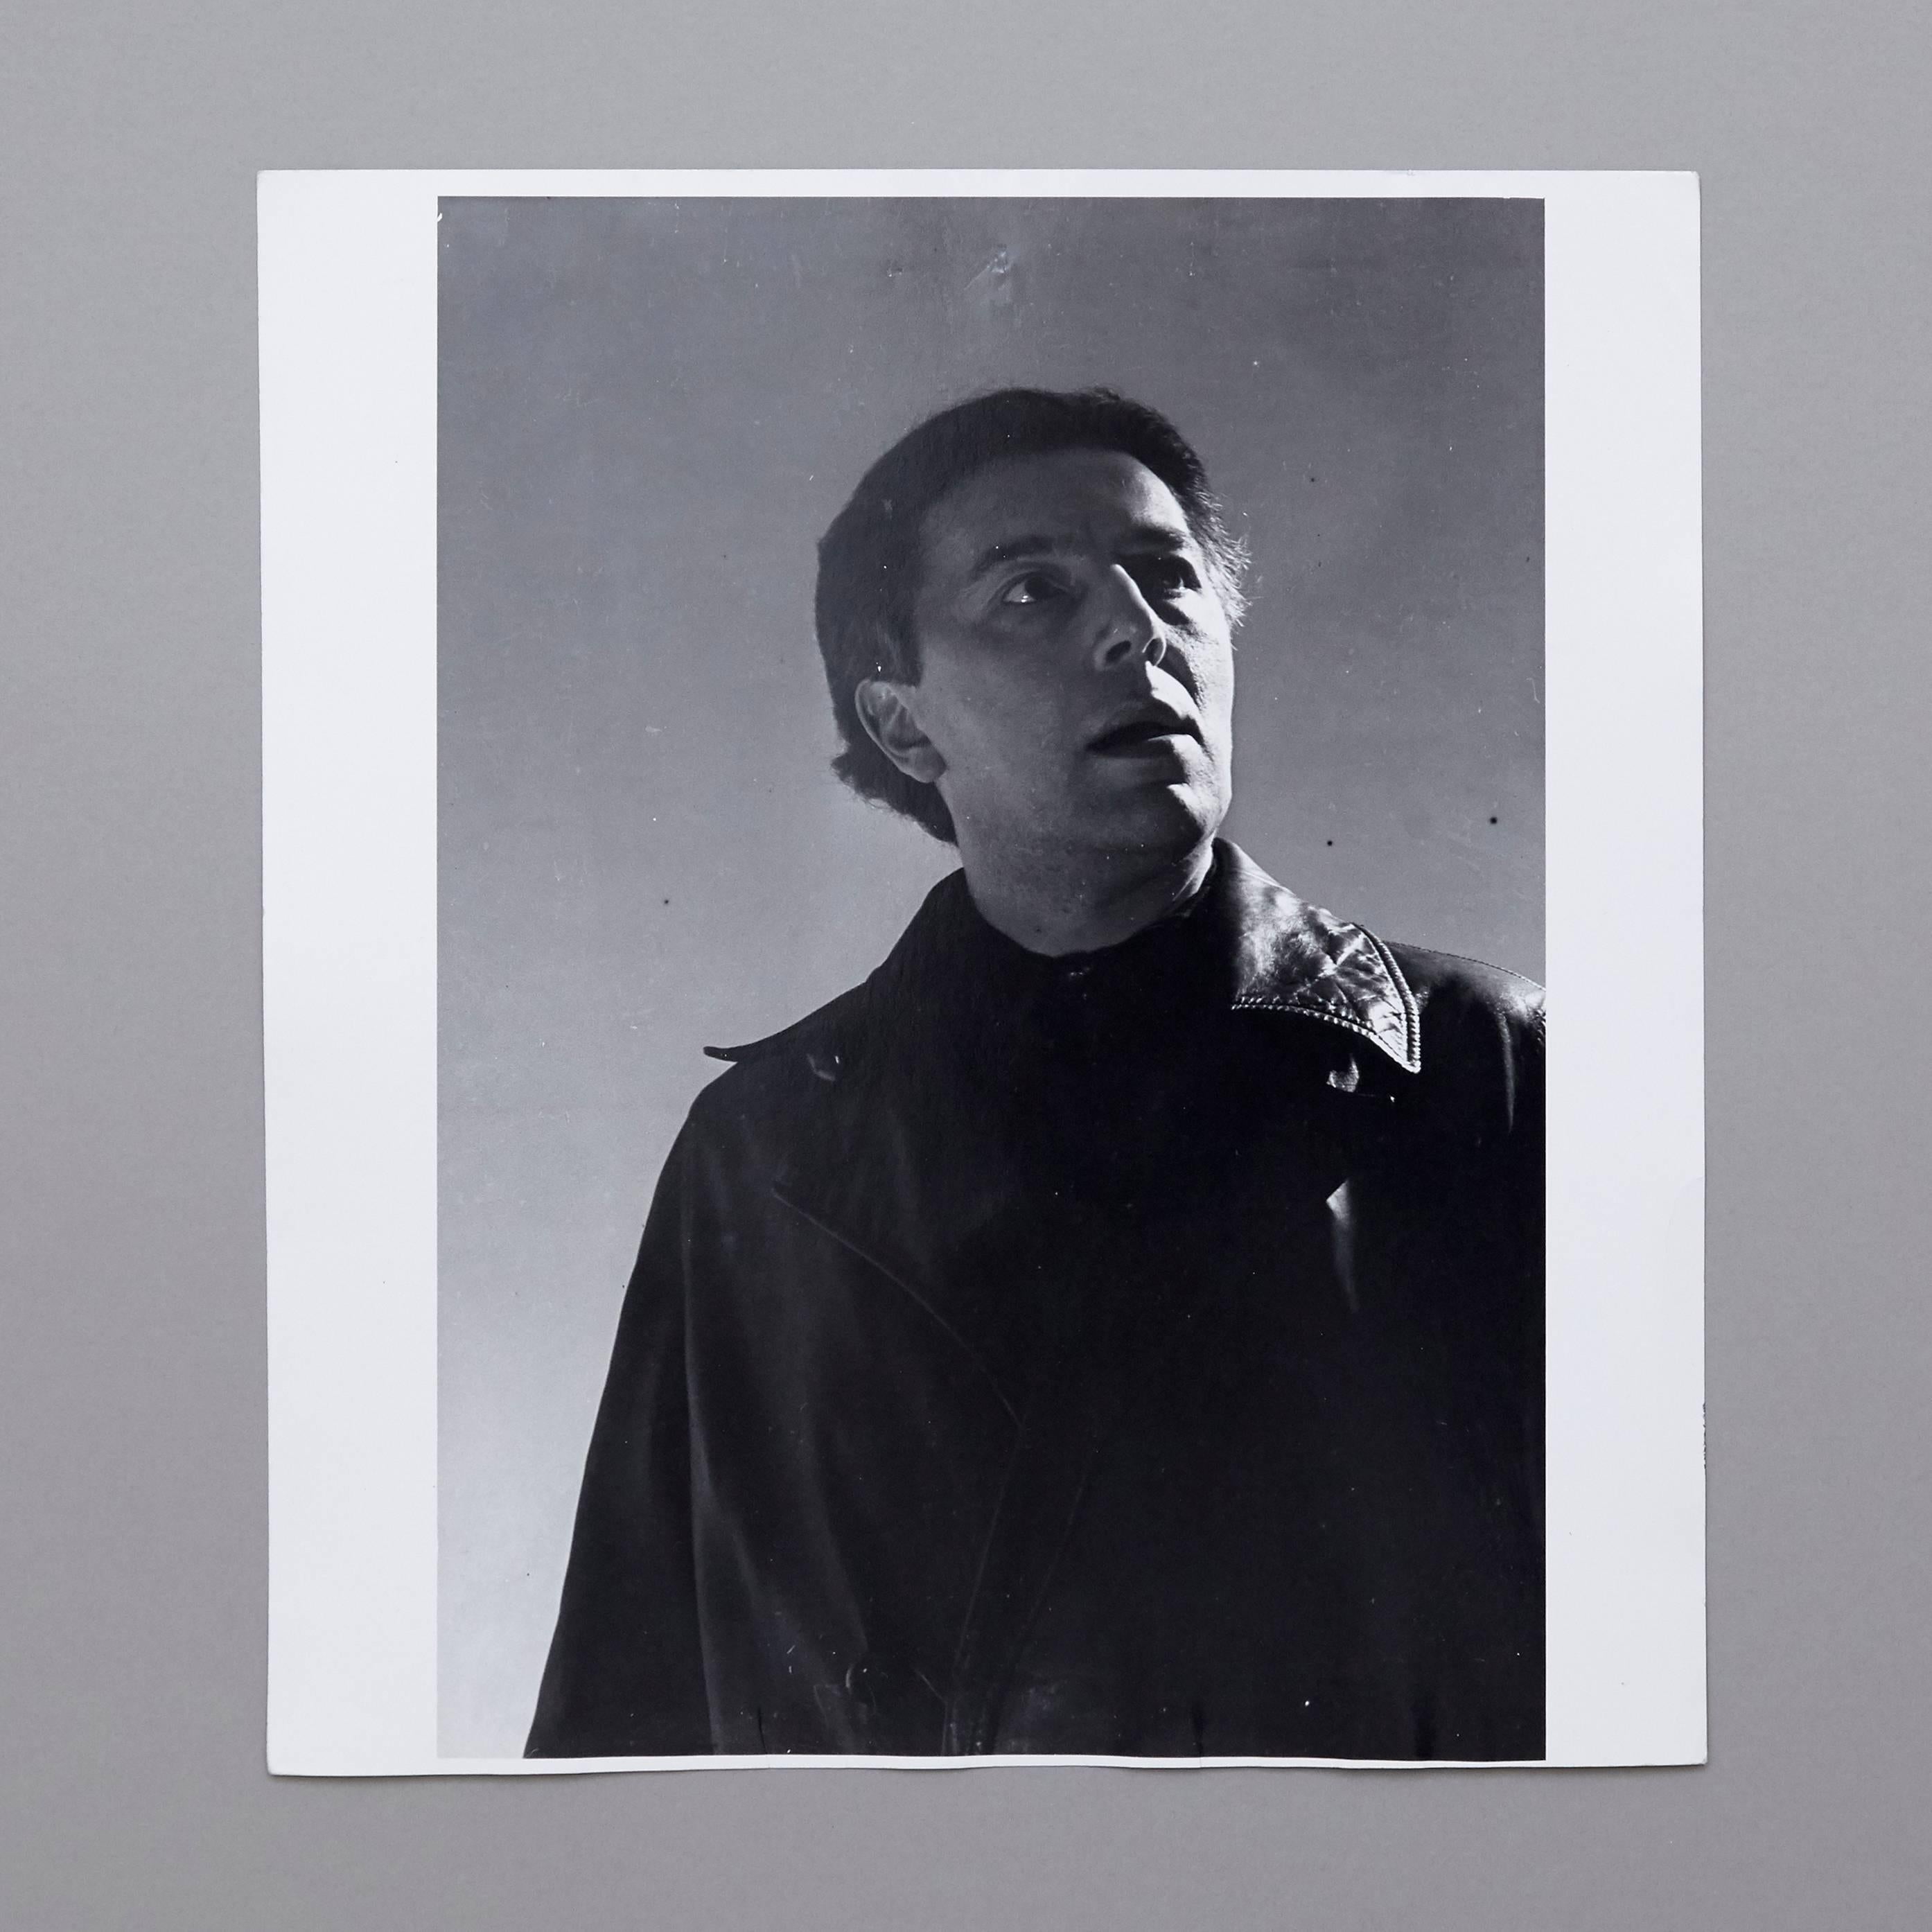 Portrait d'André Breton photographié par Man Ray, 1932.

Un tirage posthume à partir du négatif original en 1977 par Pierre Gassmann.

Gélatine bromure d'argent.

Né (Philadelphie, 1890 - Paris, 1976) Emmanuel Radnitzky, Man Ray adopte son